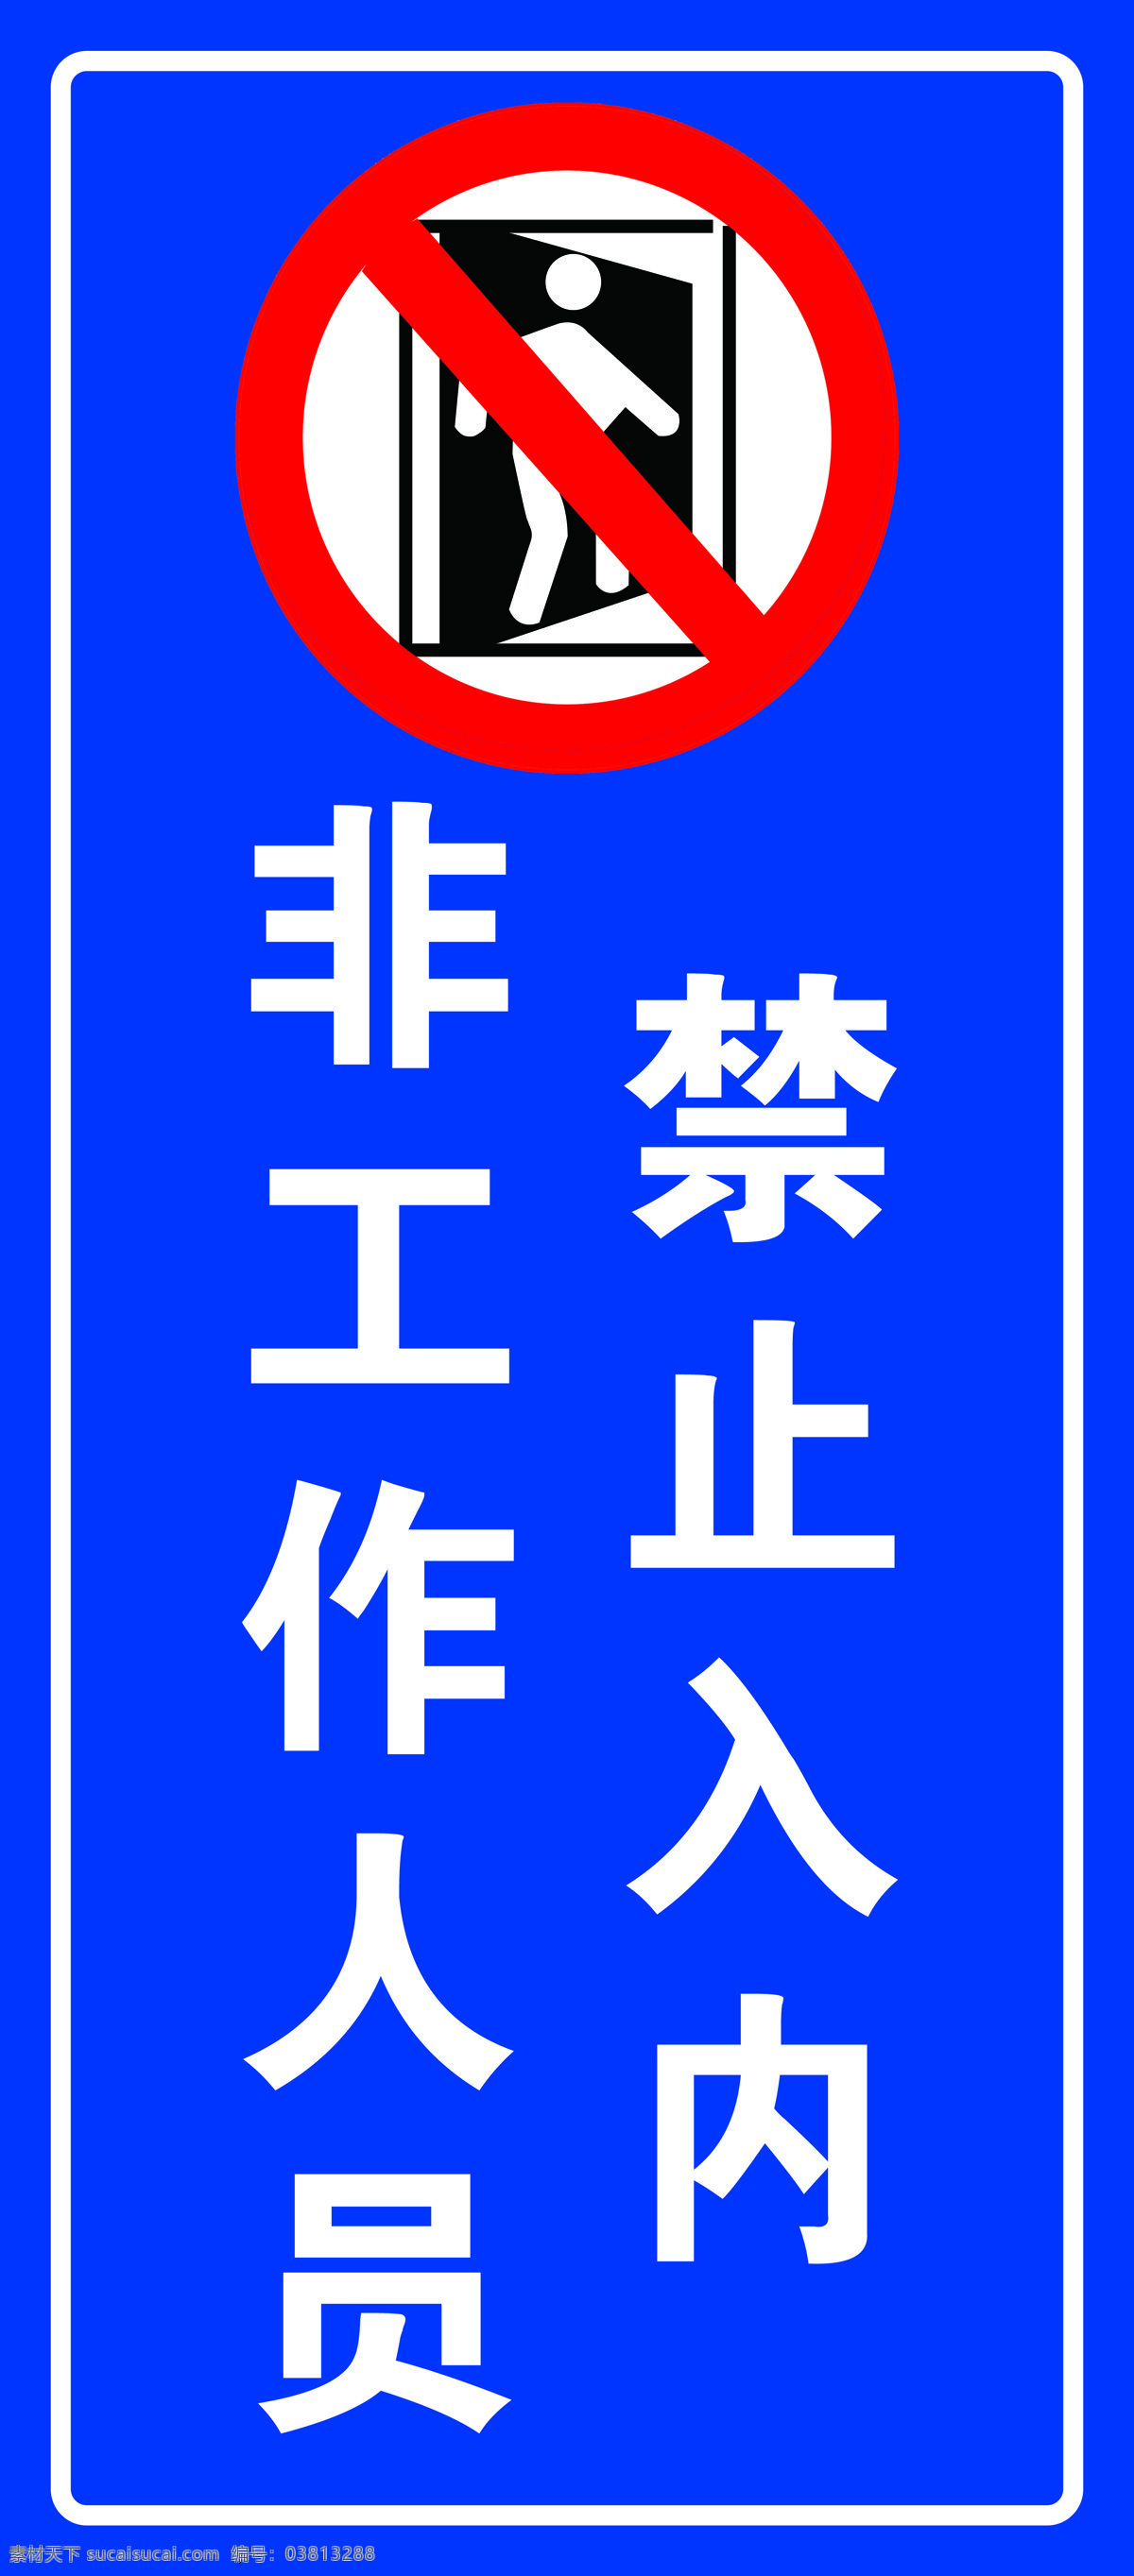 禁止入内图片 禁止入内 蓝色 标识 公共标识 交通 标志图标 公共标识标志